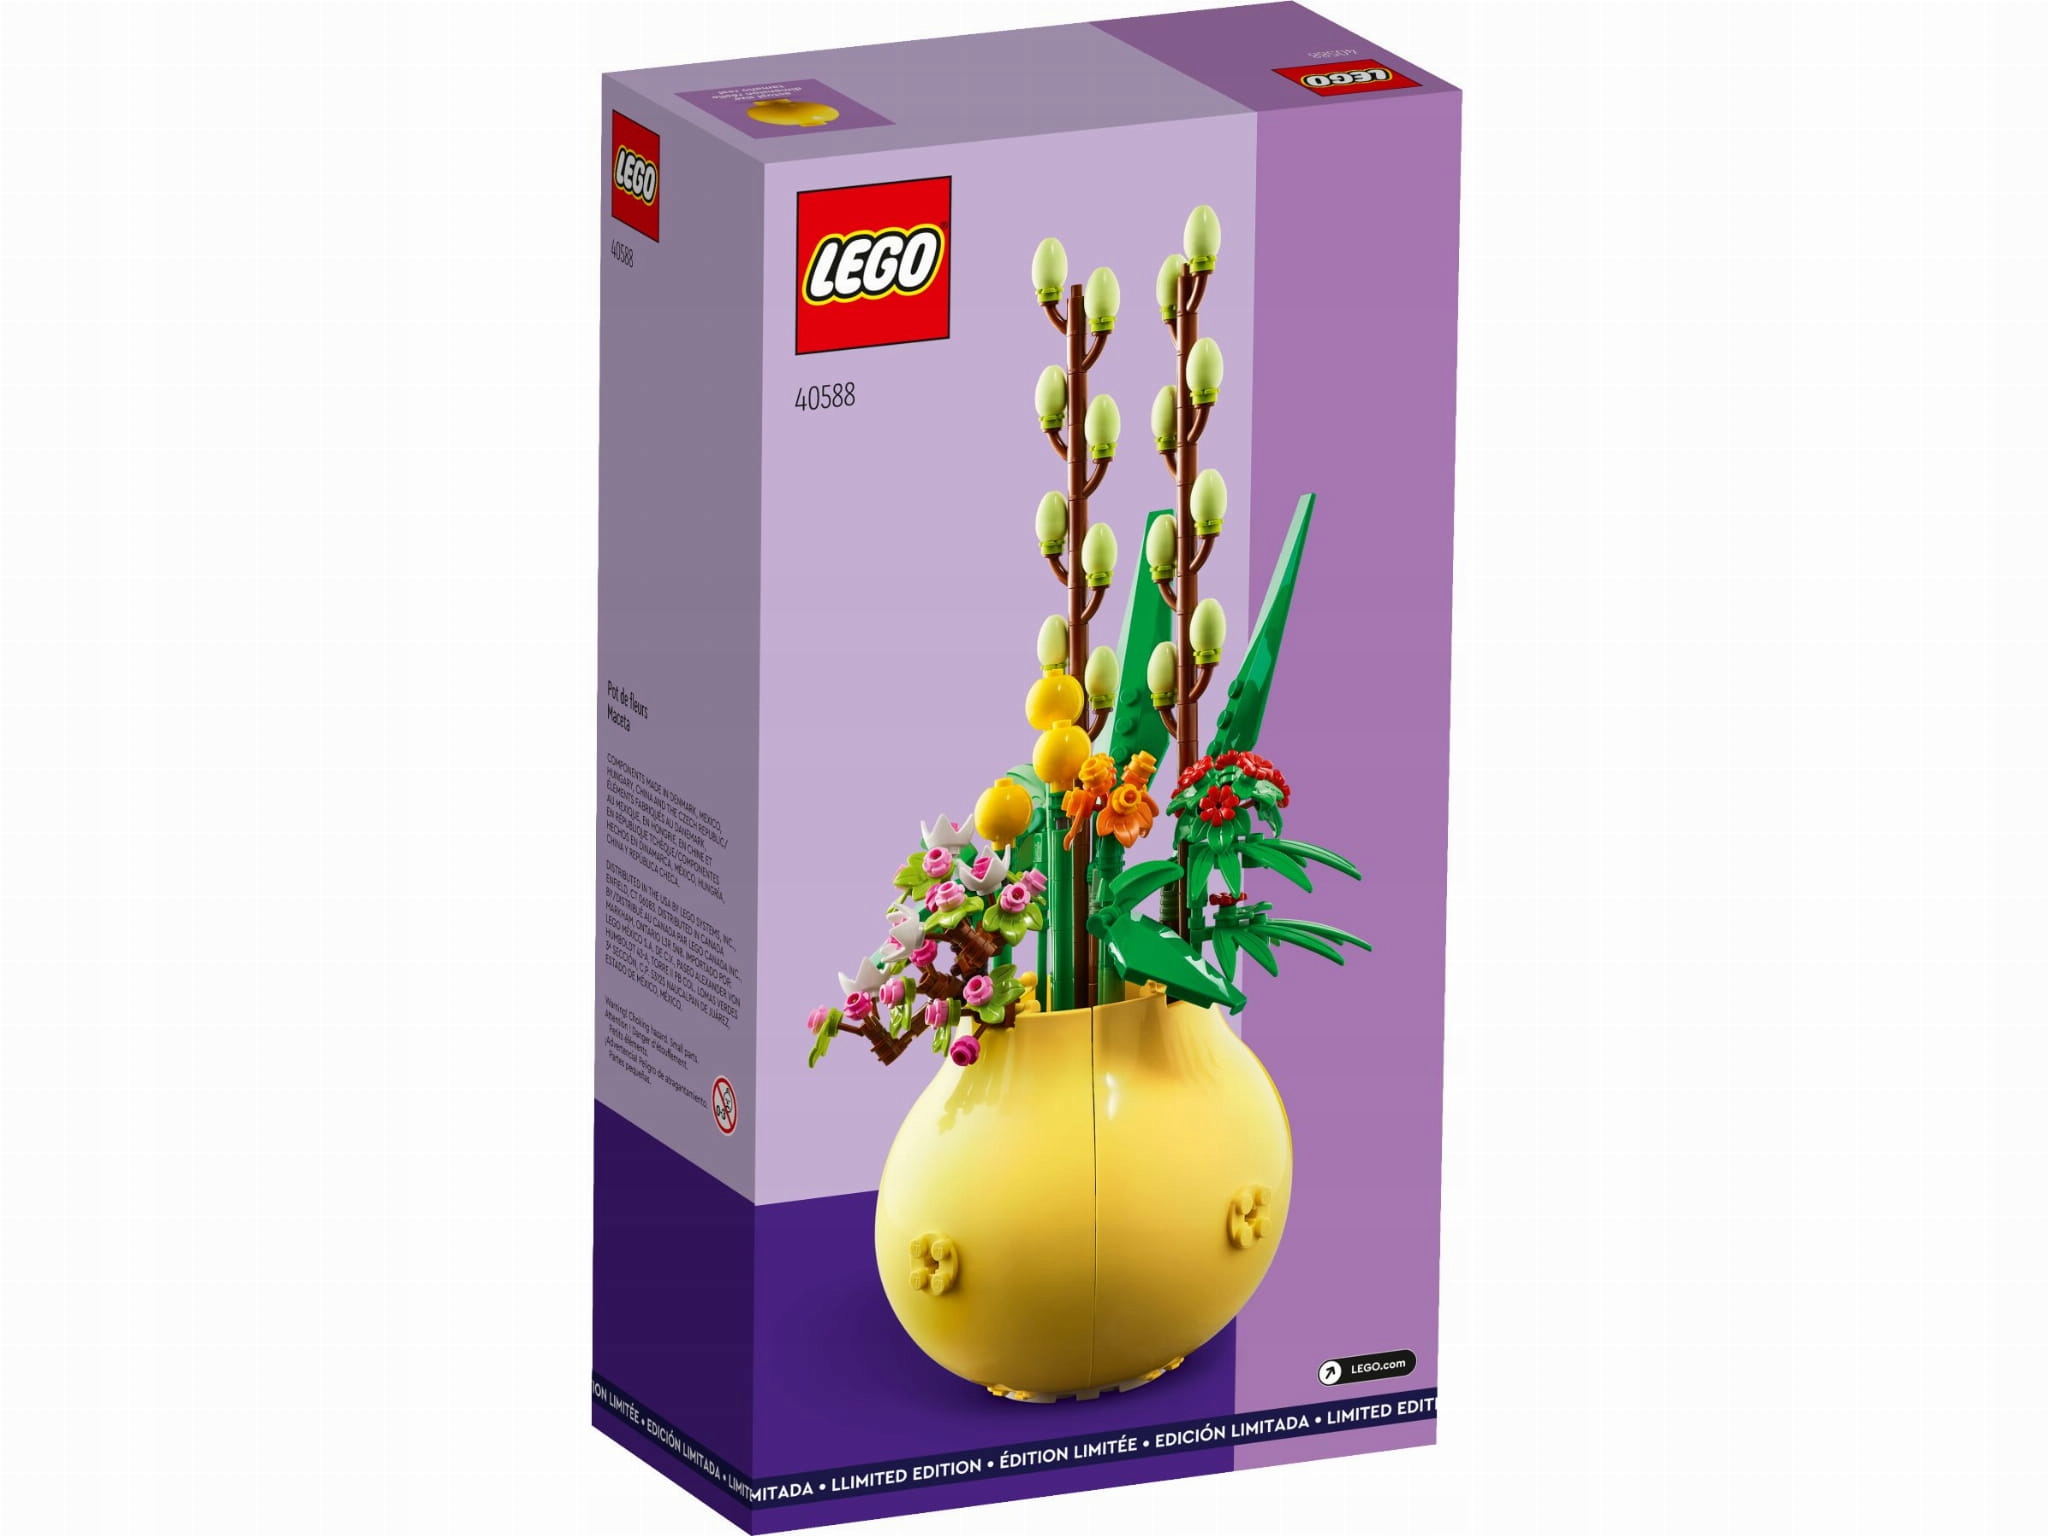 LEGO 40588 - Le Pot de Fleurs 